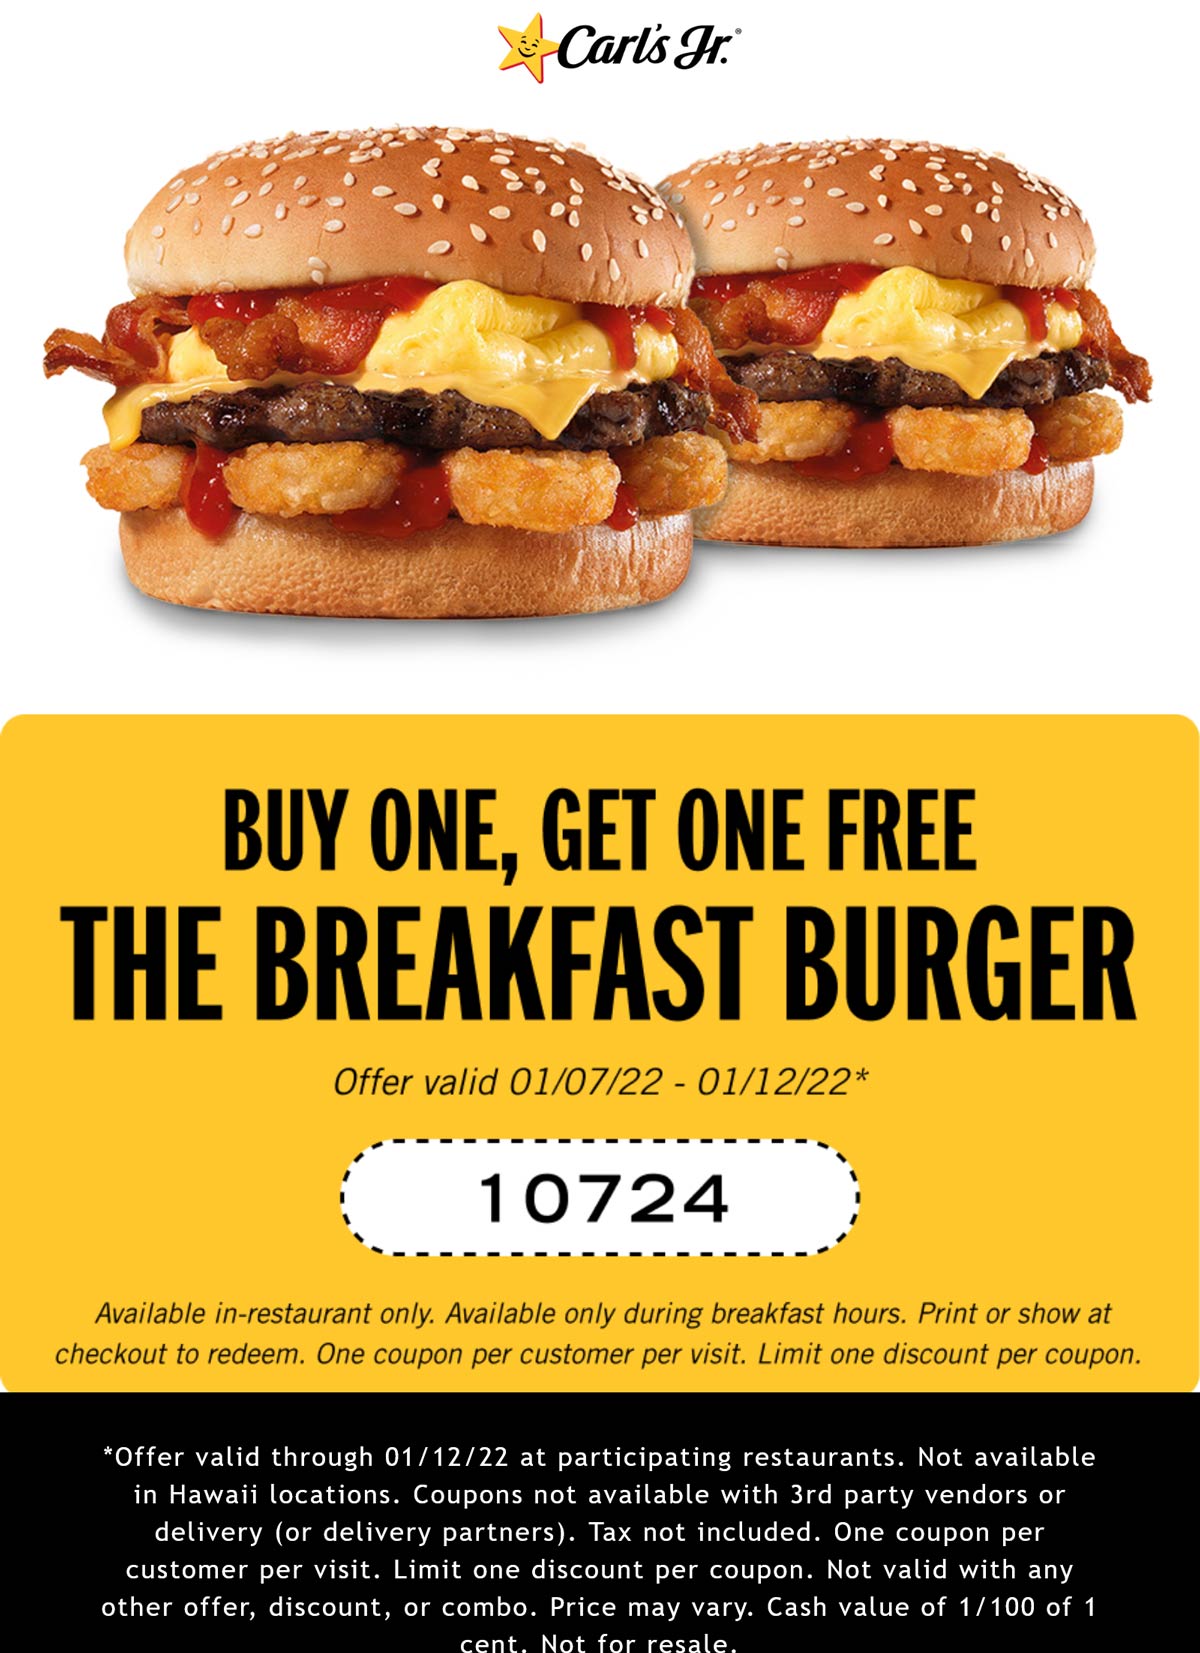 Carls Jr restaurants Coupon  Second breakfast burger free at Carls Jr #carlsjr 